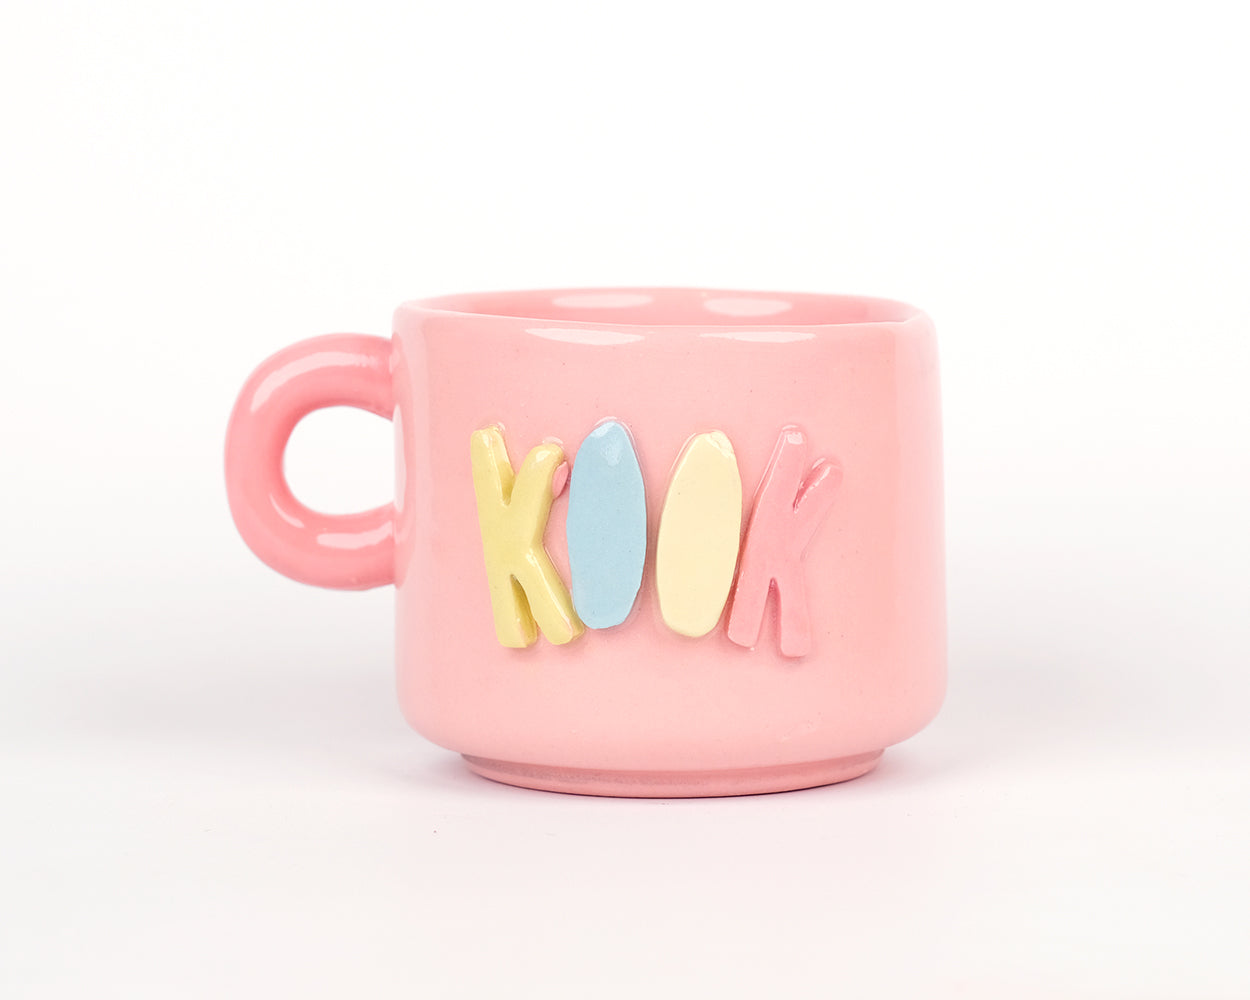 Kook - Teacup mug